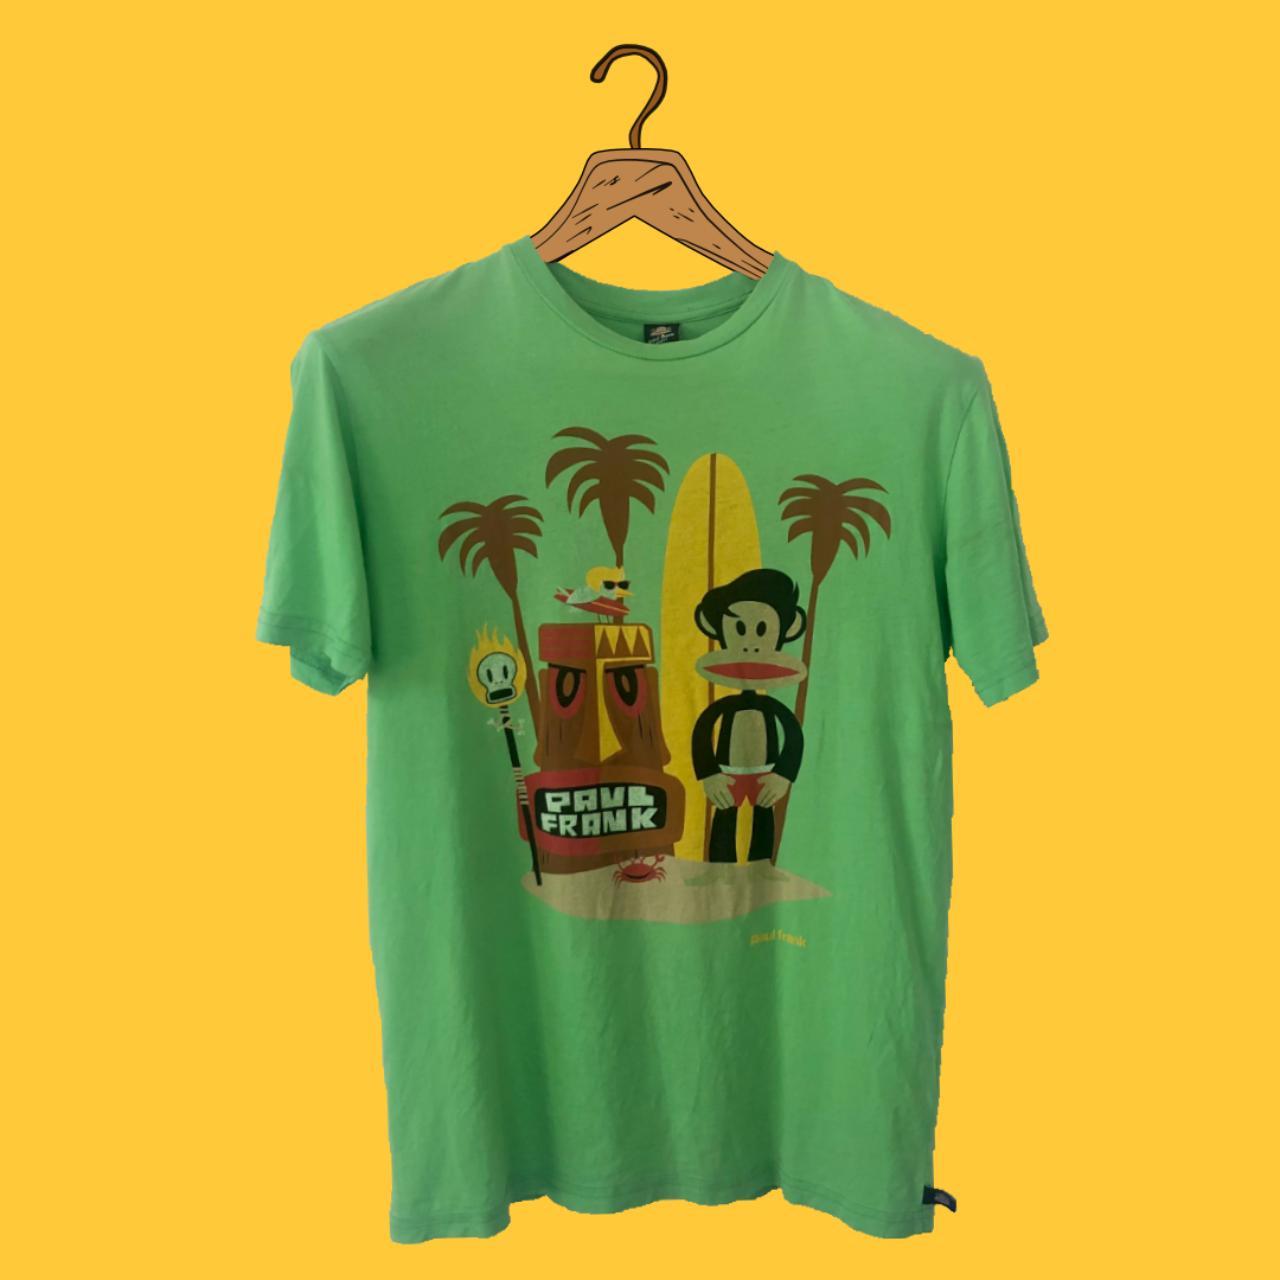 Paul Frank Men's Green T-shirt | Depop